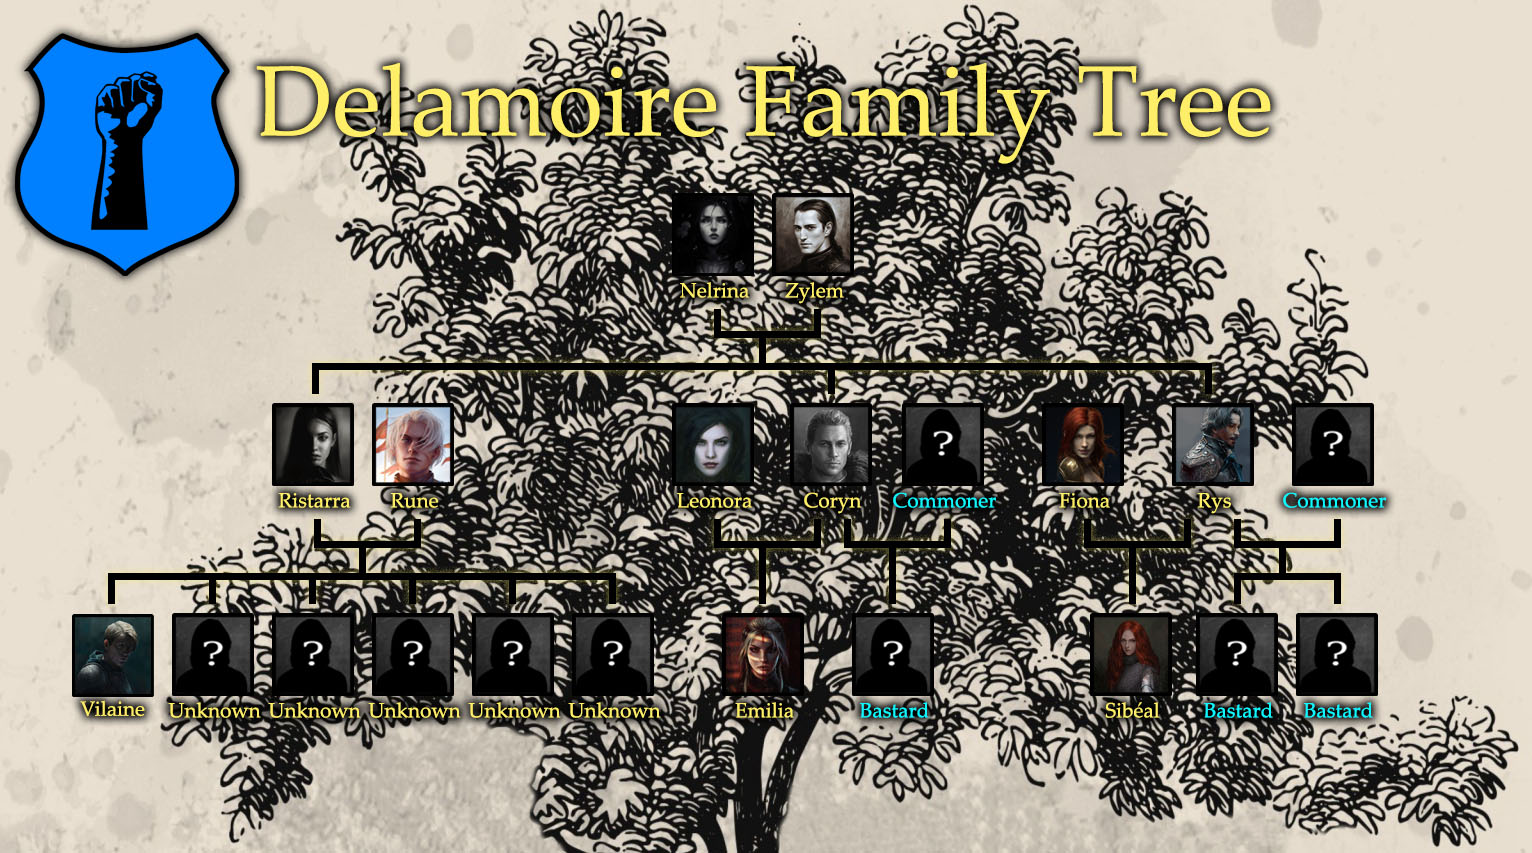 Delamoire Family Tree.jpg